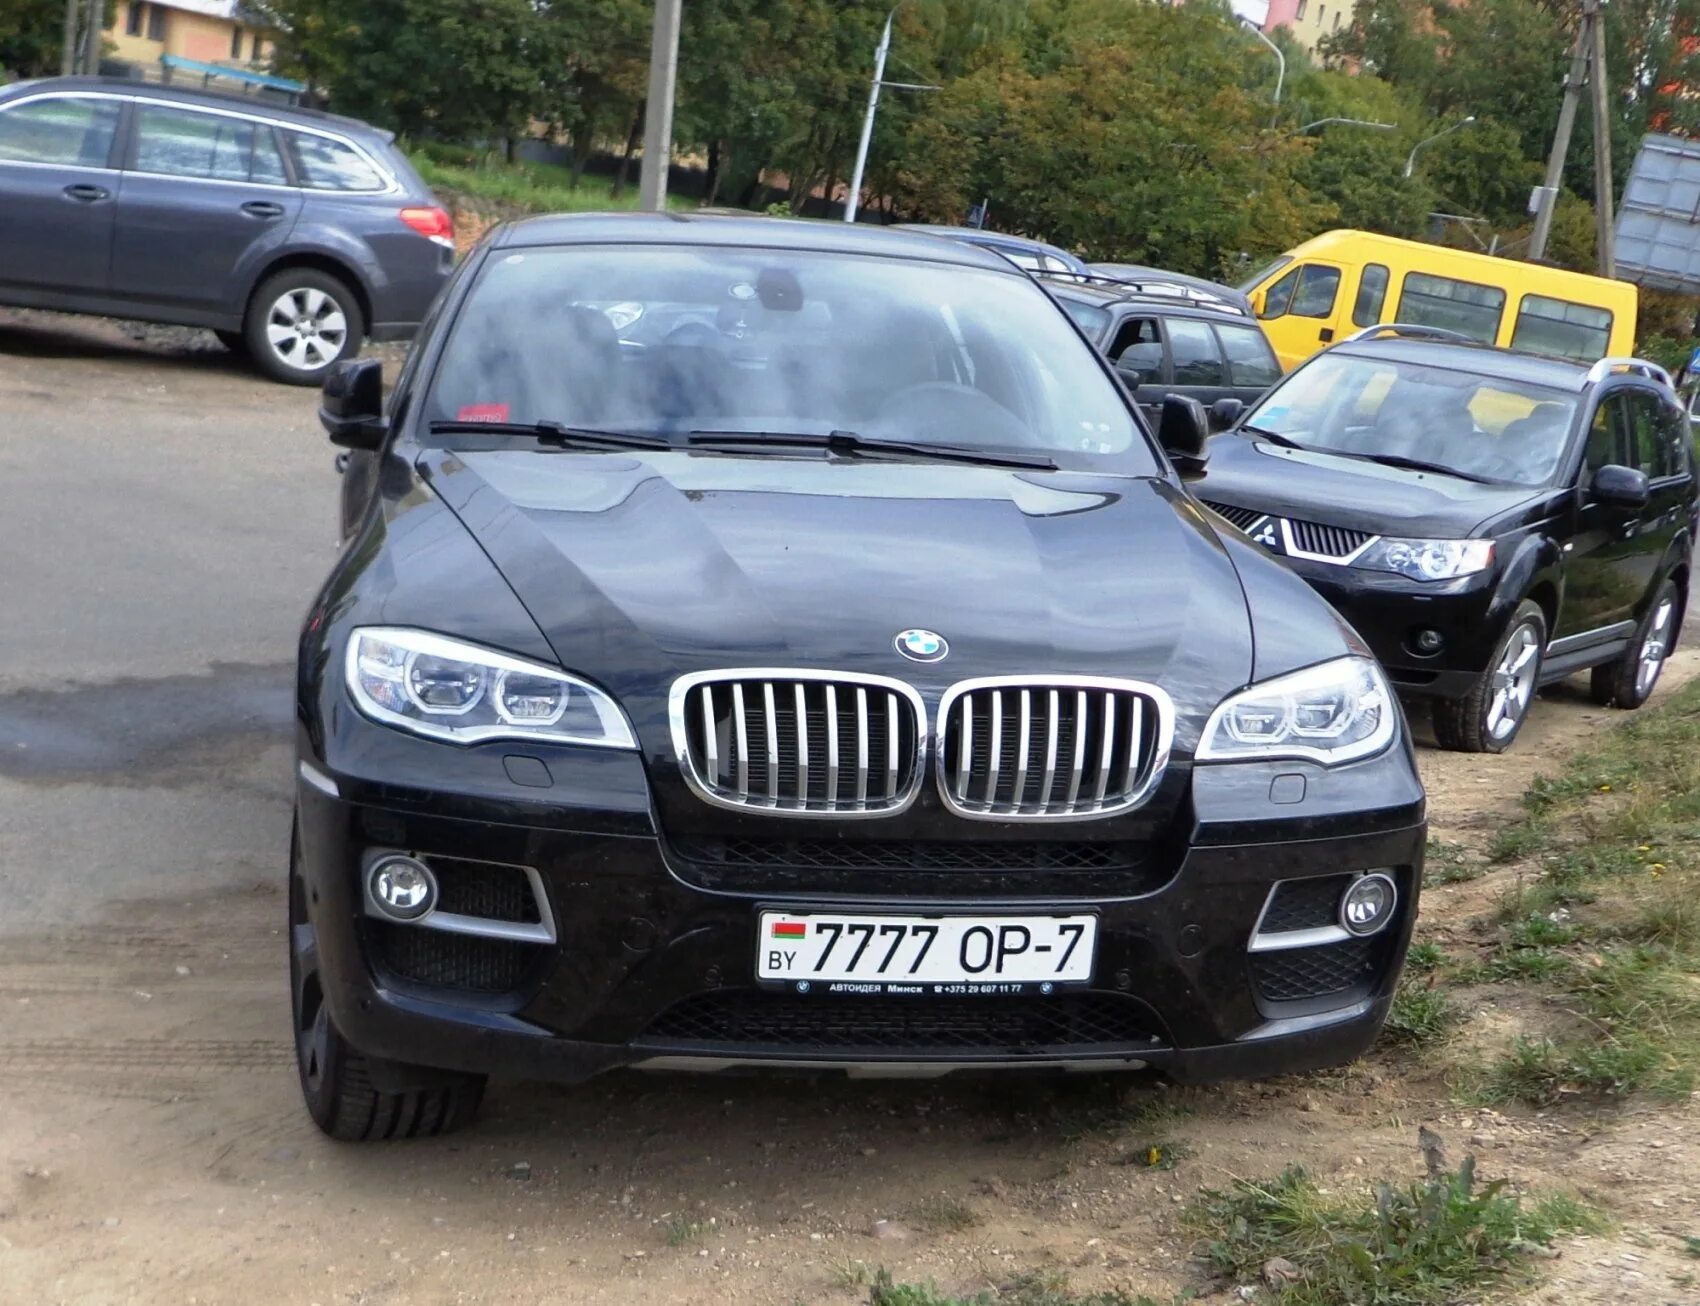 БМВ х5 777. БМВ х6 с белорусскими номера. BMX x5 с русскими номерами. BMW x6 турецкие номера.